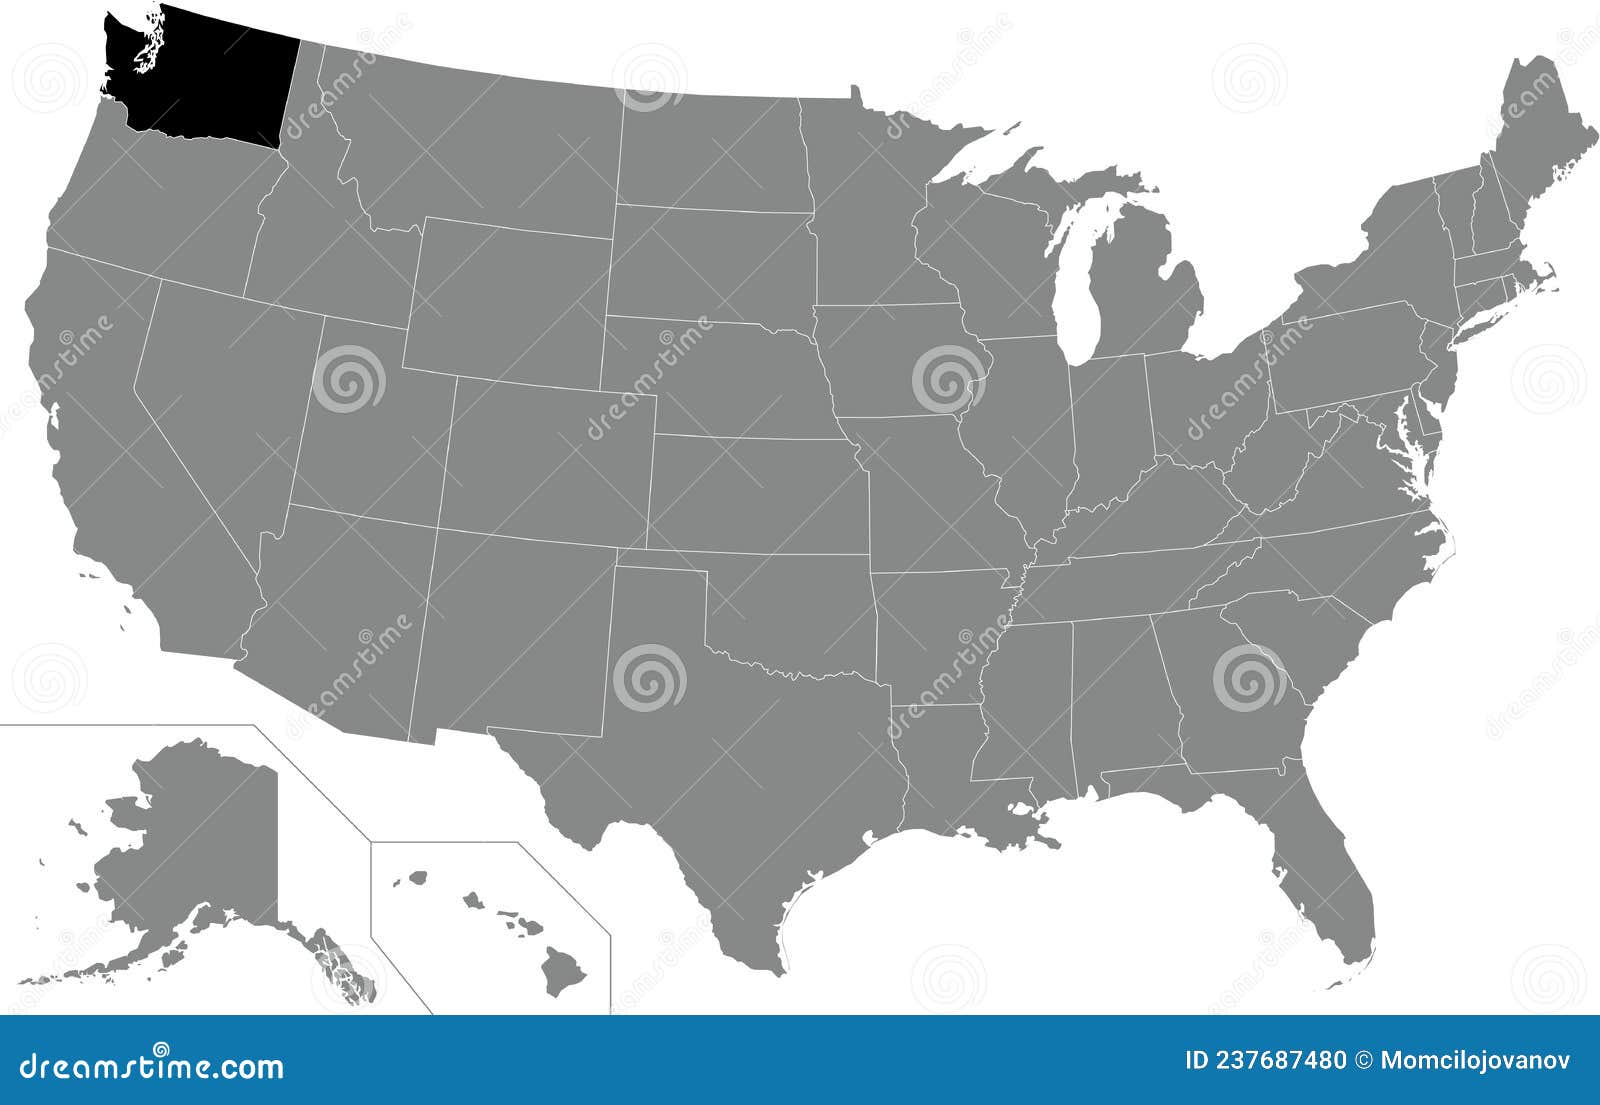 华盛顿州物理地图 向量例证. 插画 包括有 背包, 国界的, 地区, 科尔法, 城市, 星期五, 地理 - 217209551